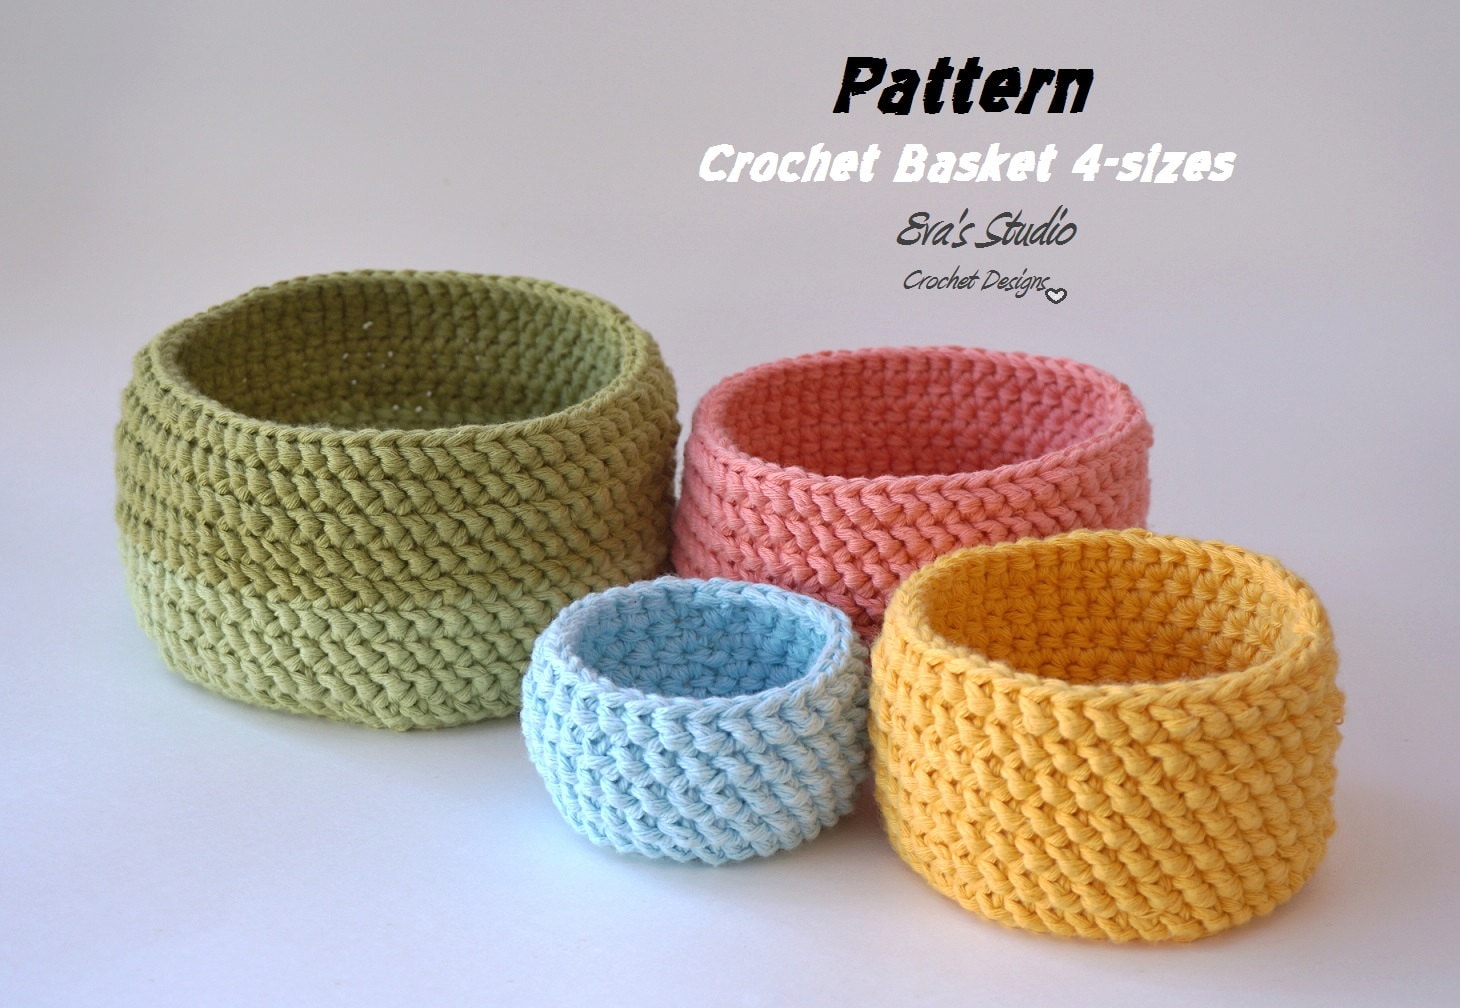 27 Free Crochet Basket Patterns - Easy Crochet Patterns